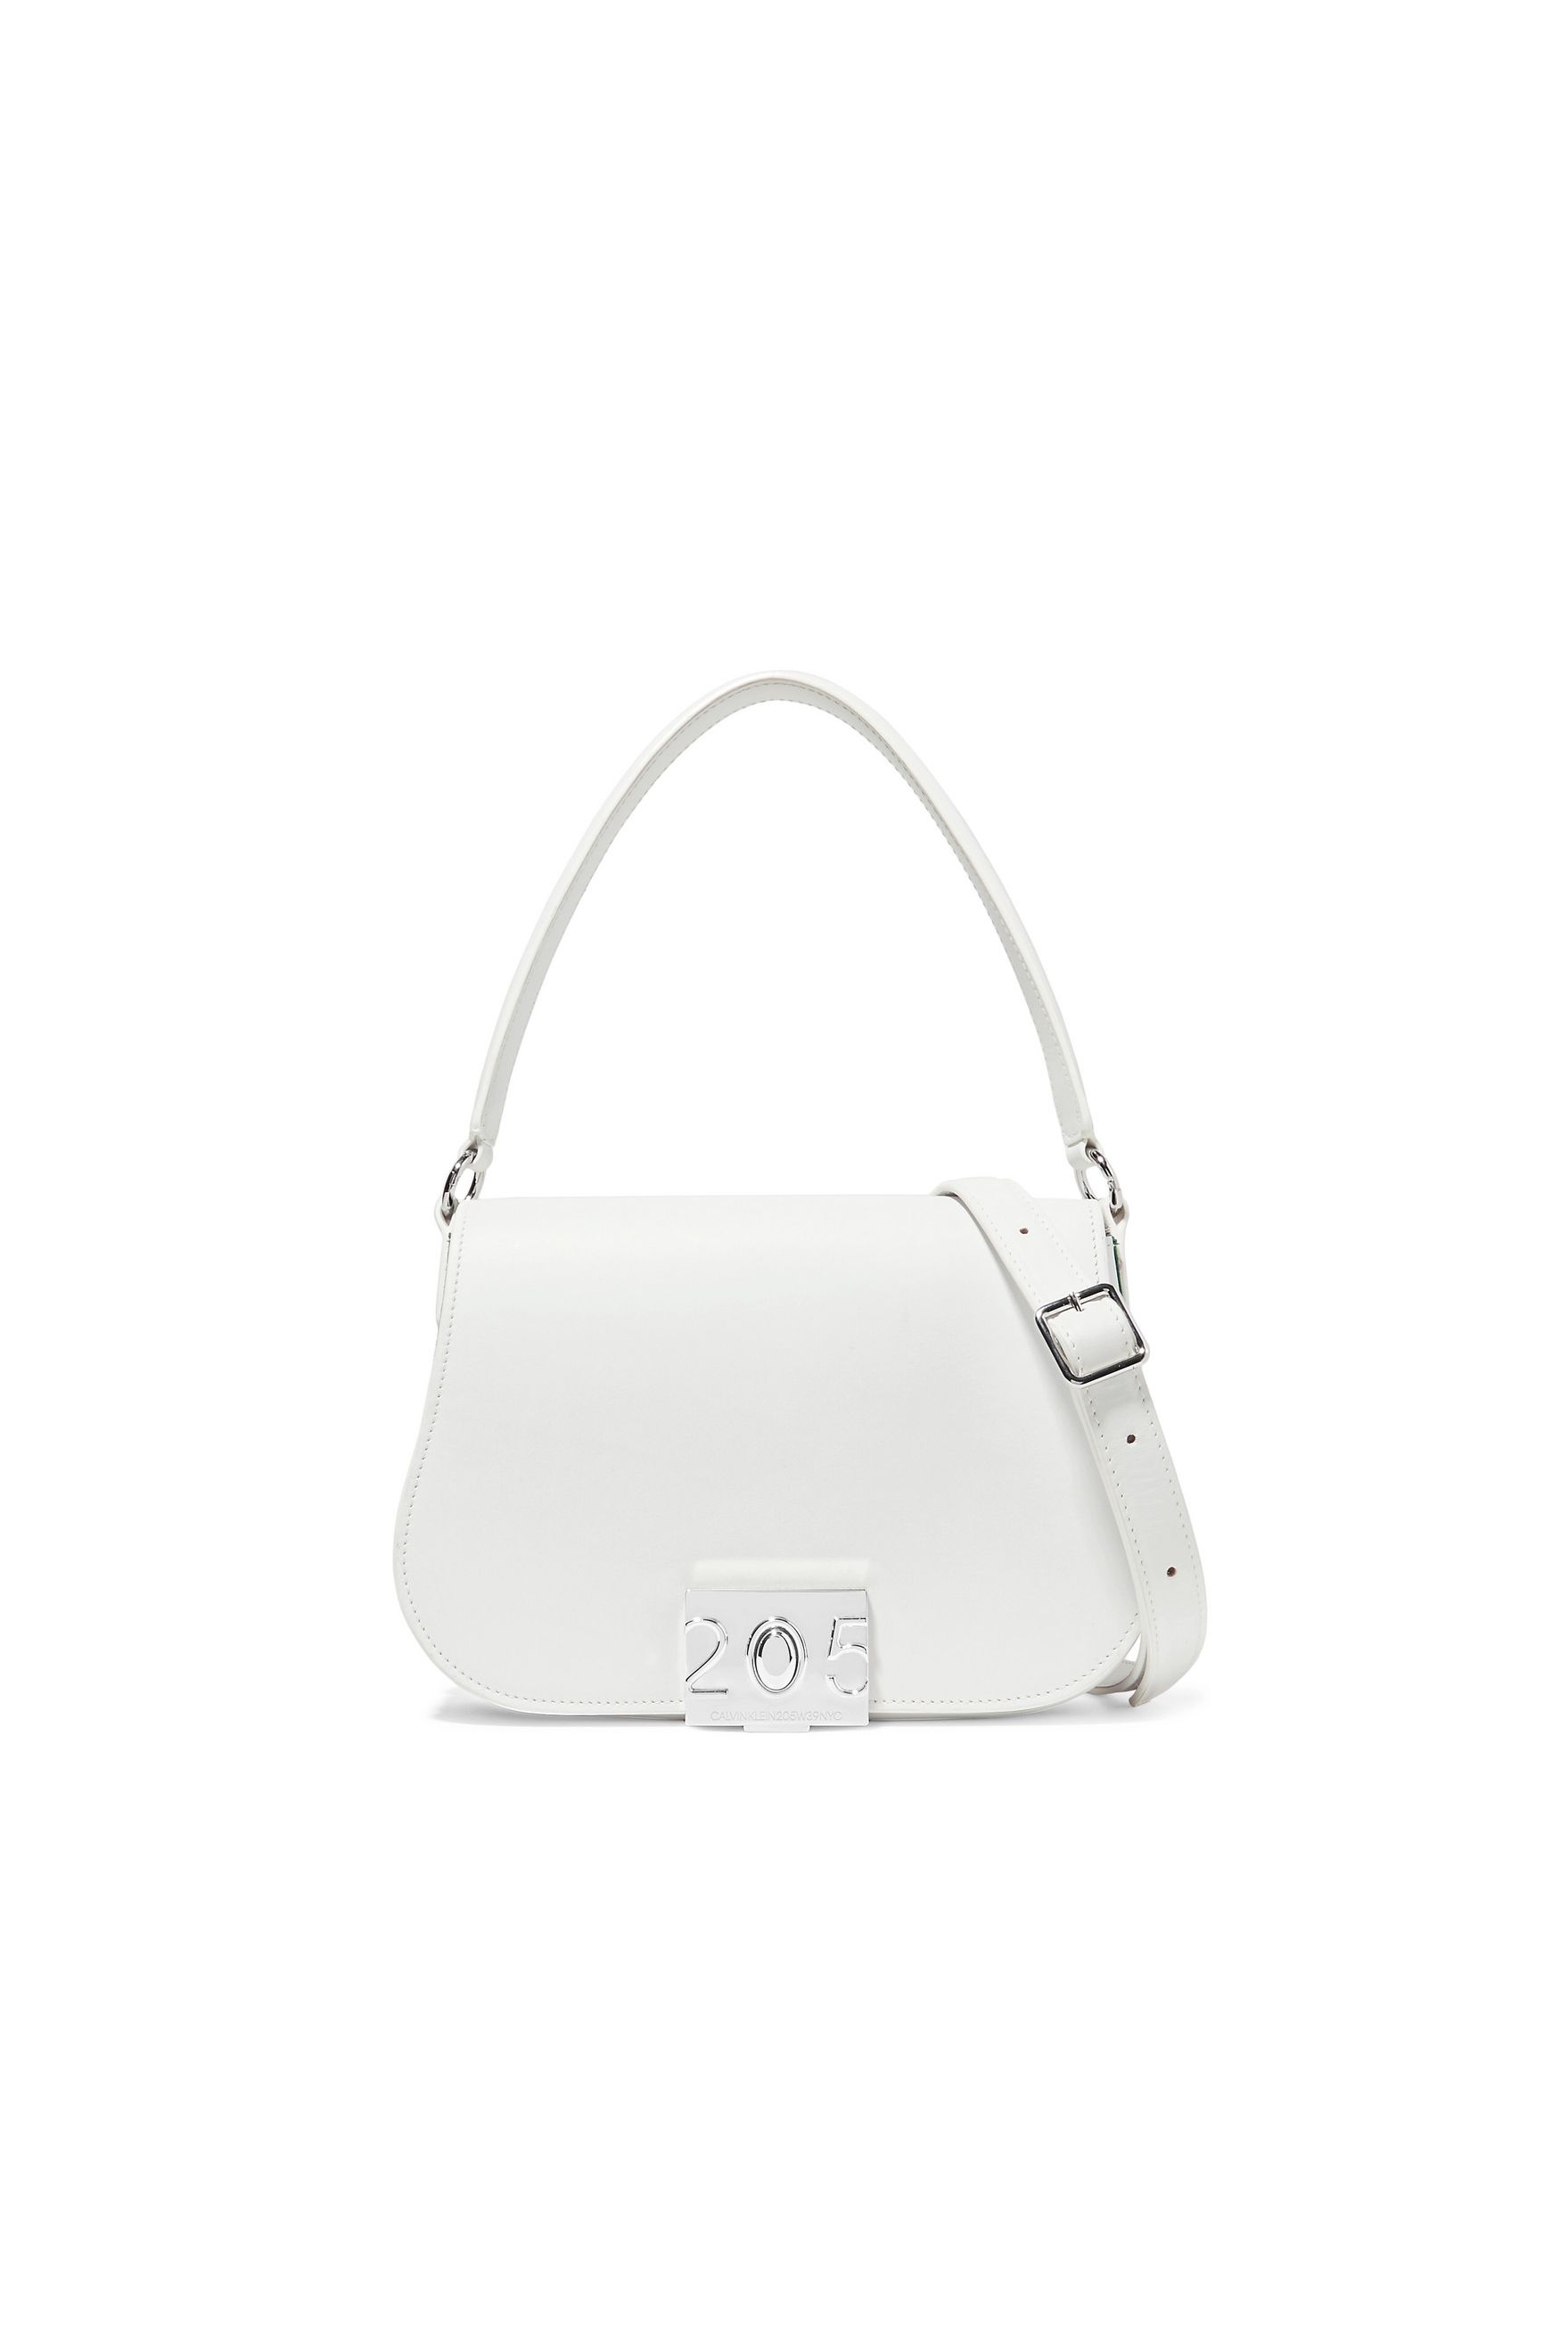 white designer handbag